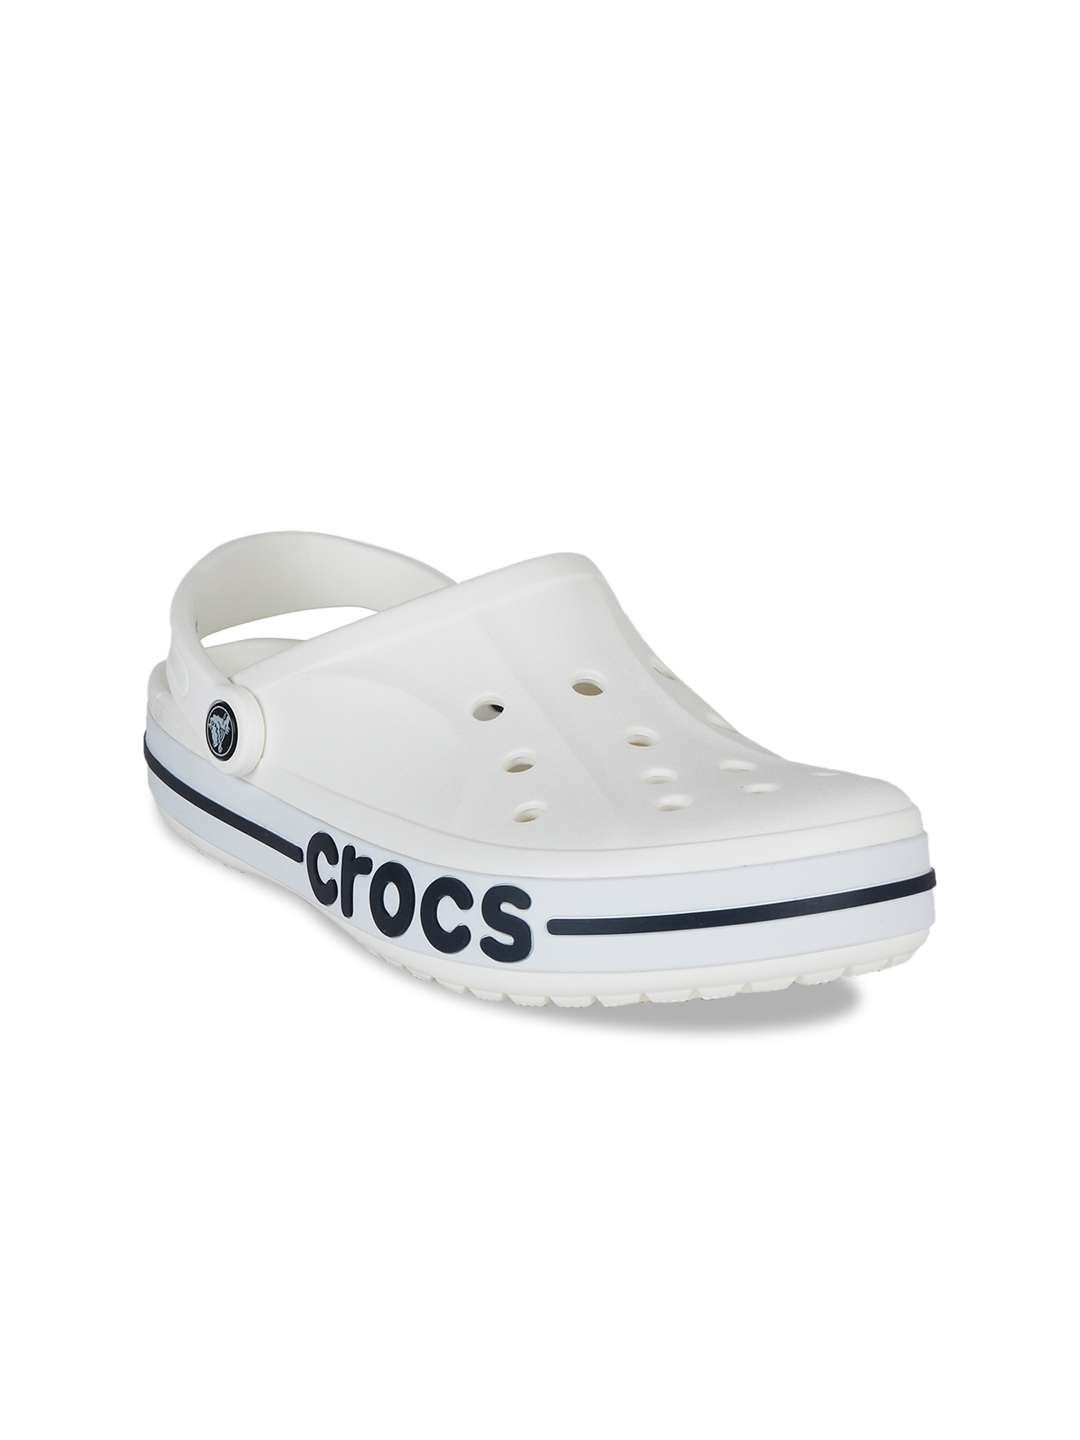 crocs for men white